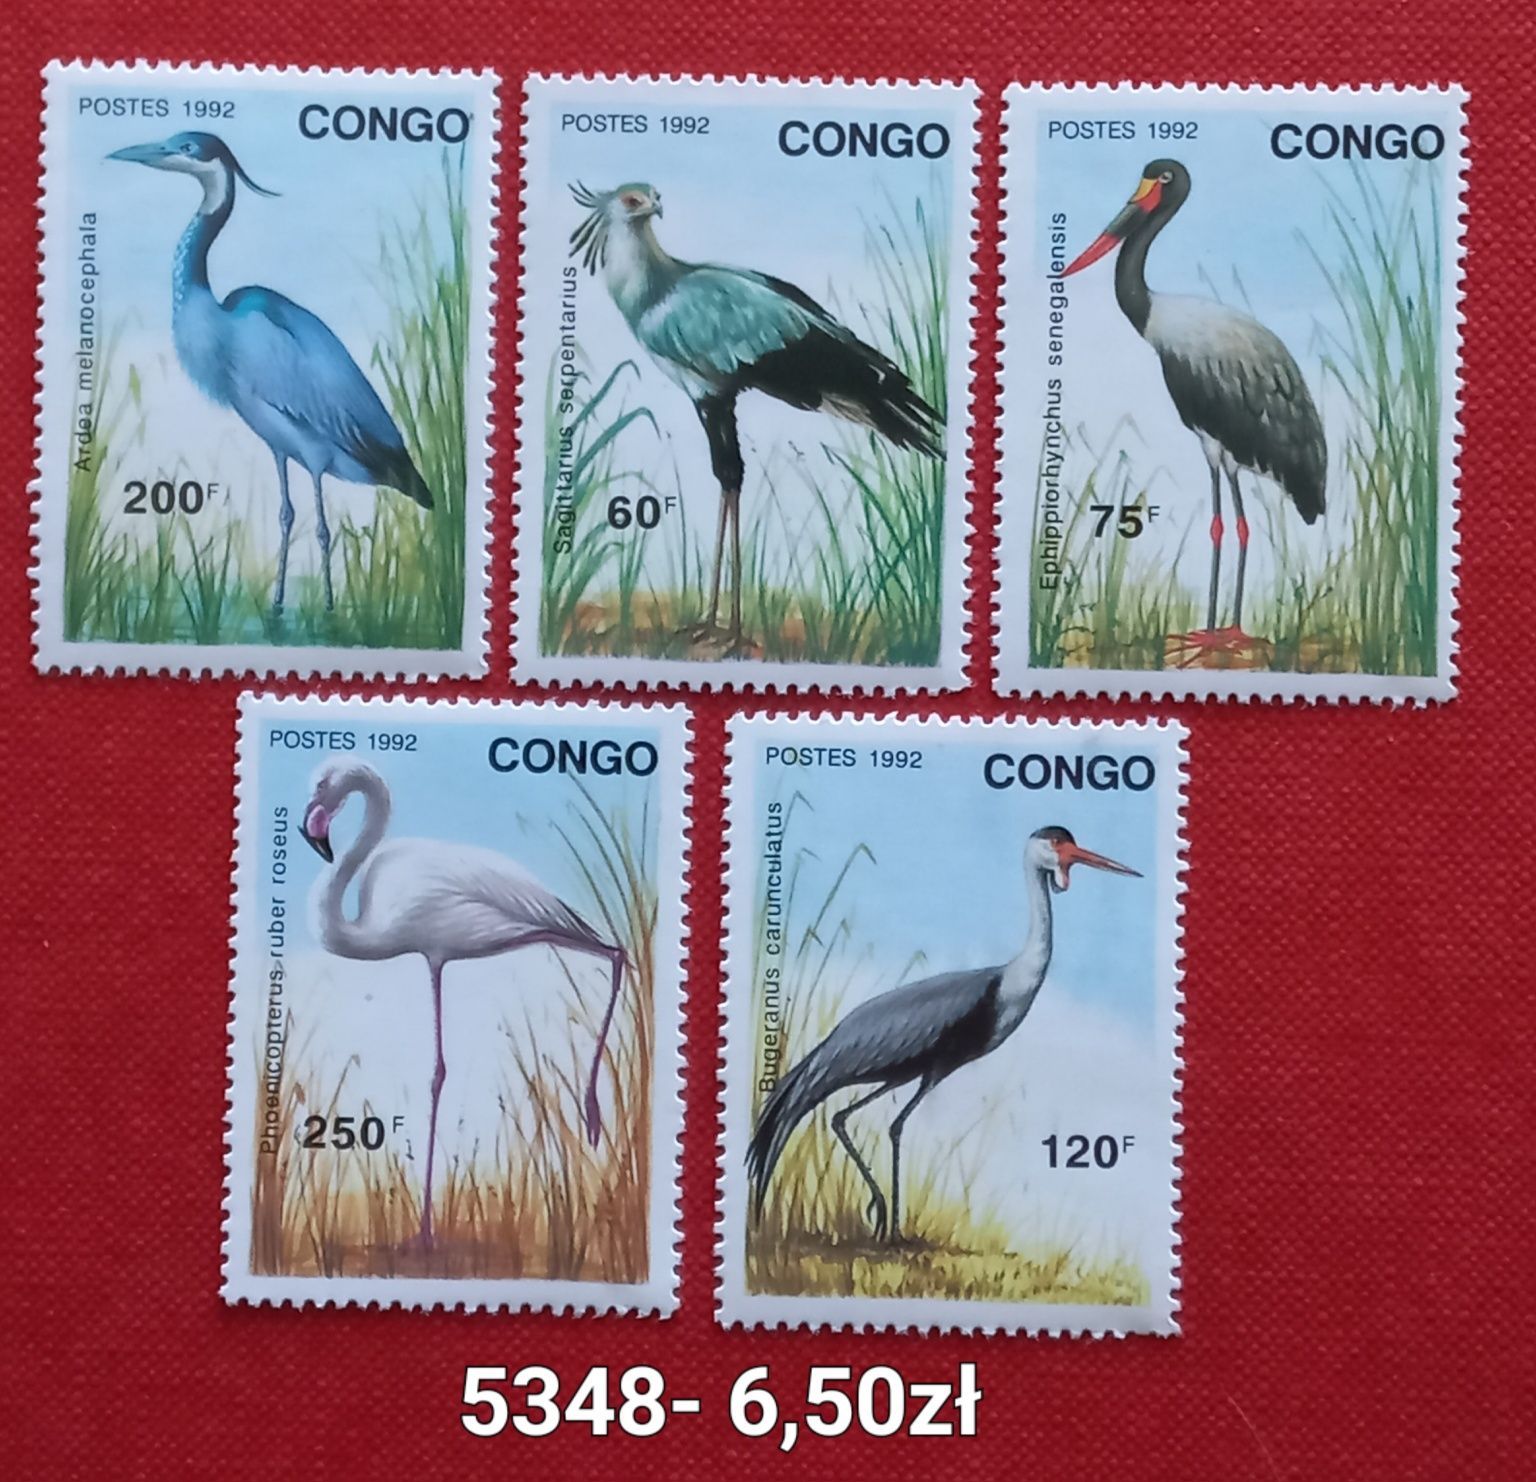 Znaczki pocztowe- fauna/ptaki,Kongo,Papua New Guinea